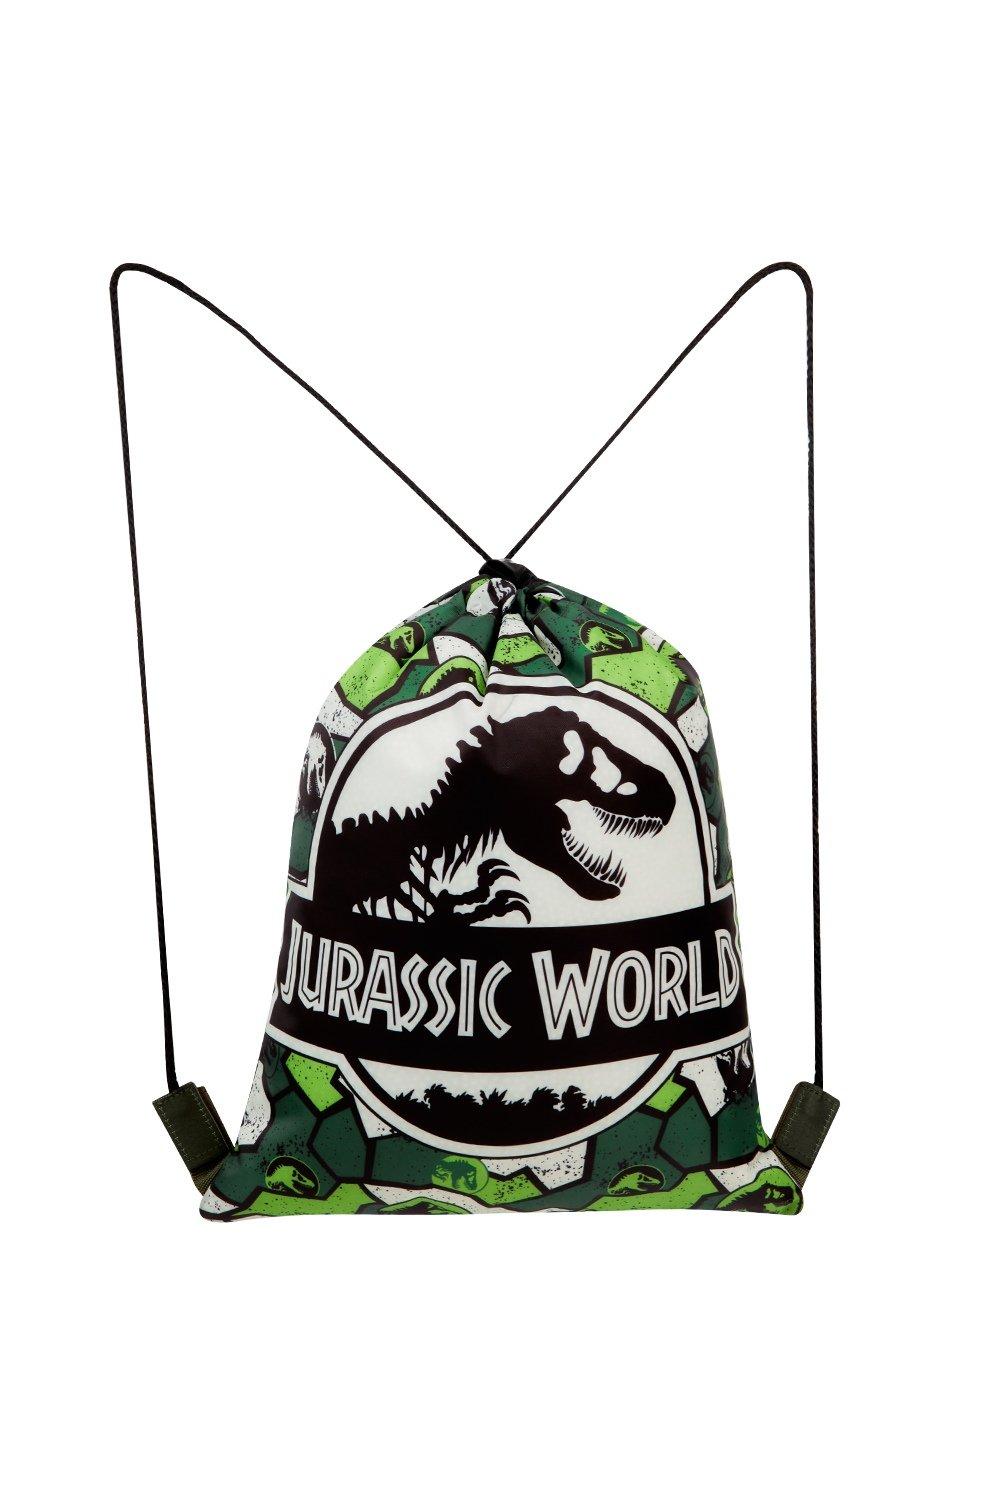 Спортивная сумка Jurassic World, мультиколор сумки на шнурке спортивная сумка американский флаг графический рюкзак рюкзак забавная новинка